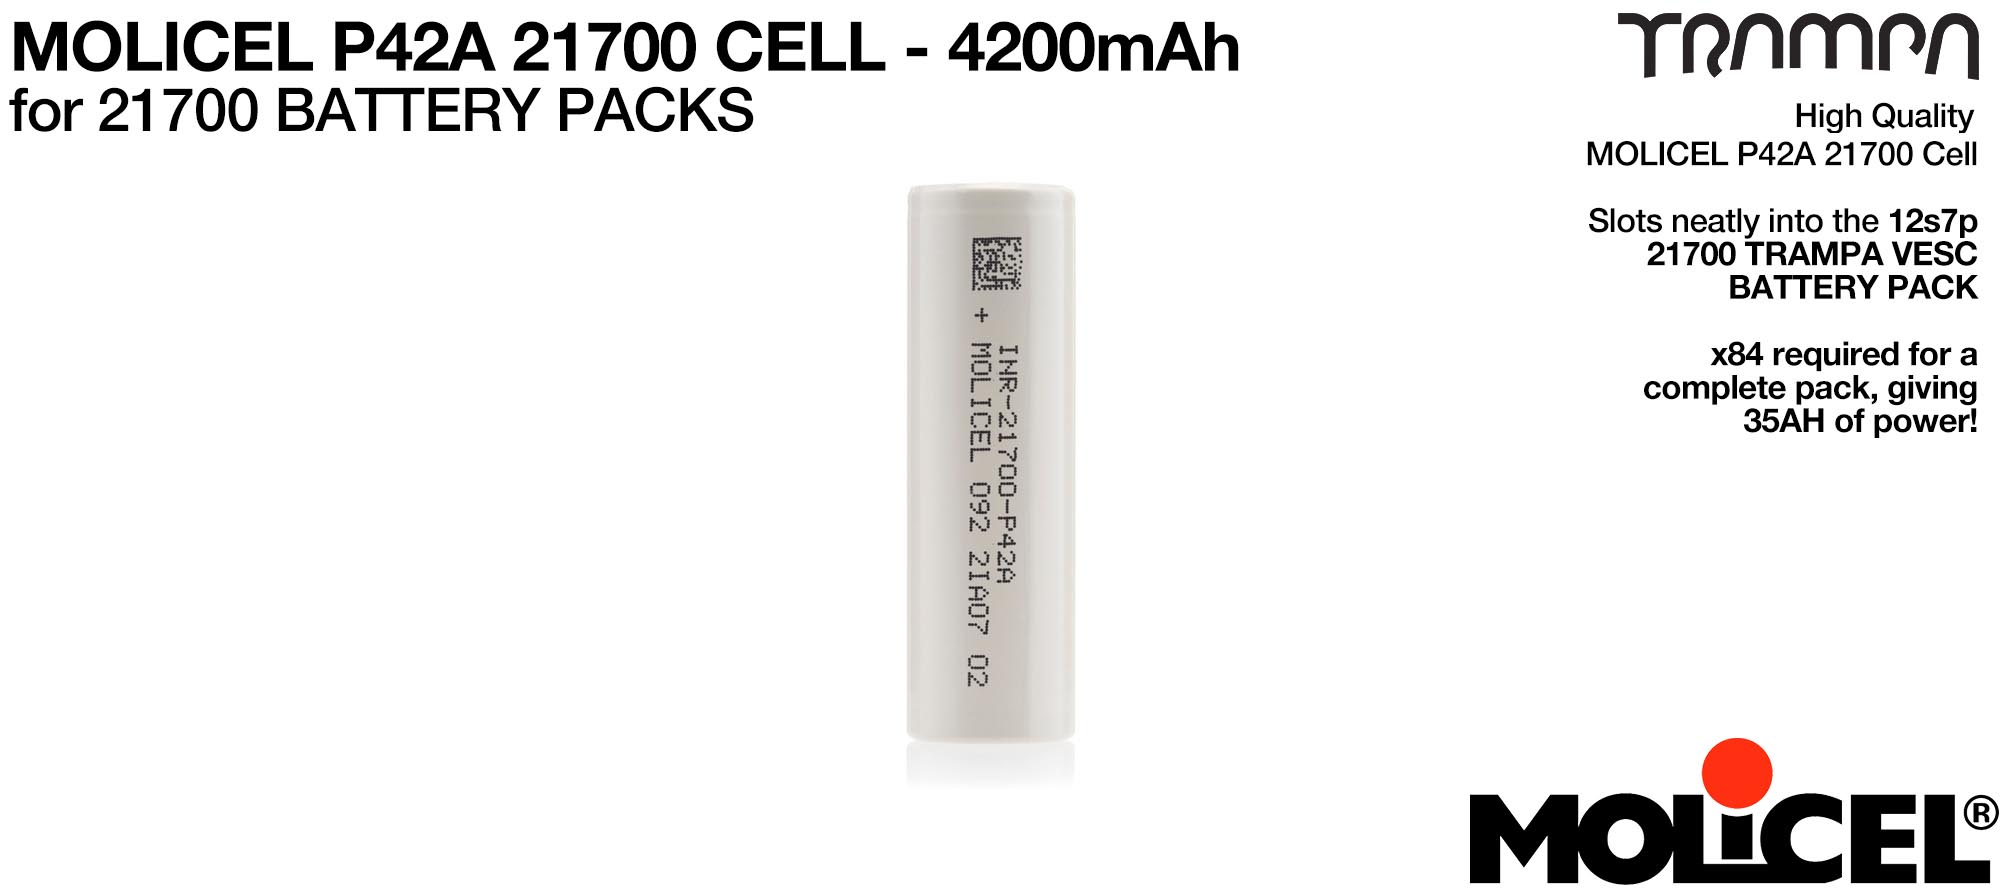 P42A MOLICEL 4200 mAh Cells (+£500)